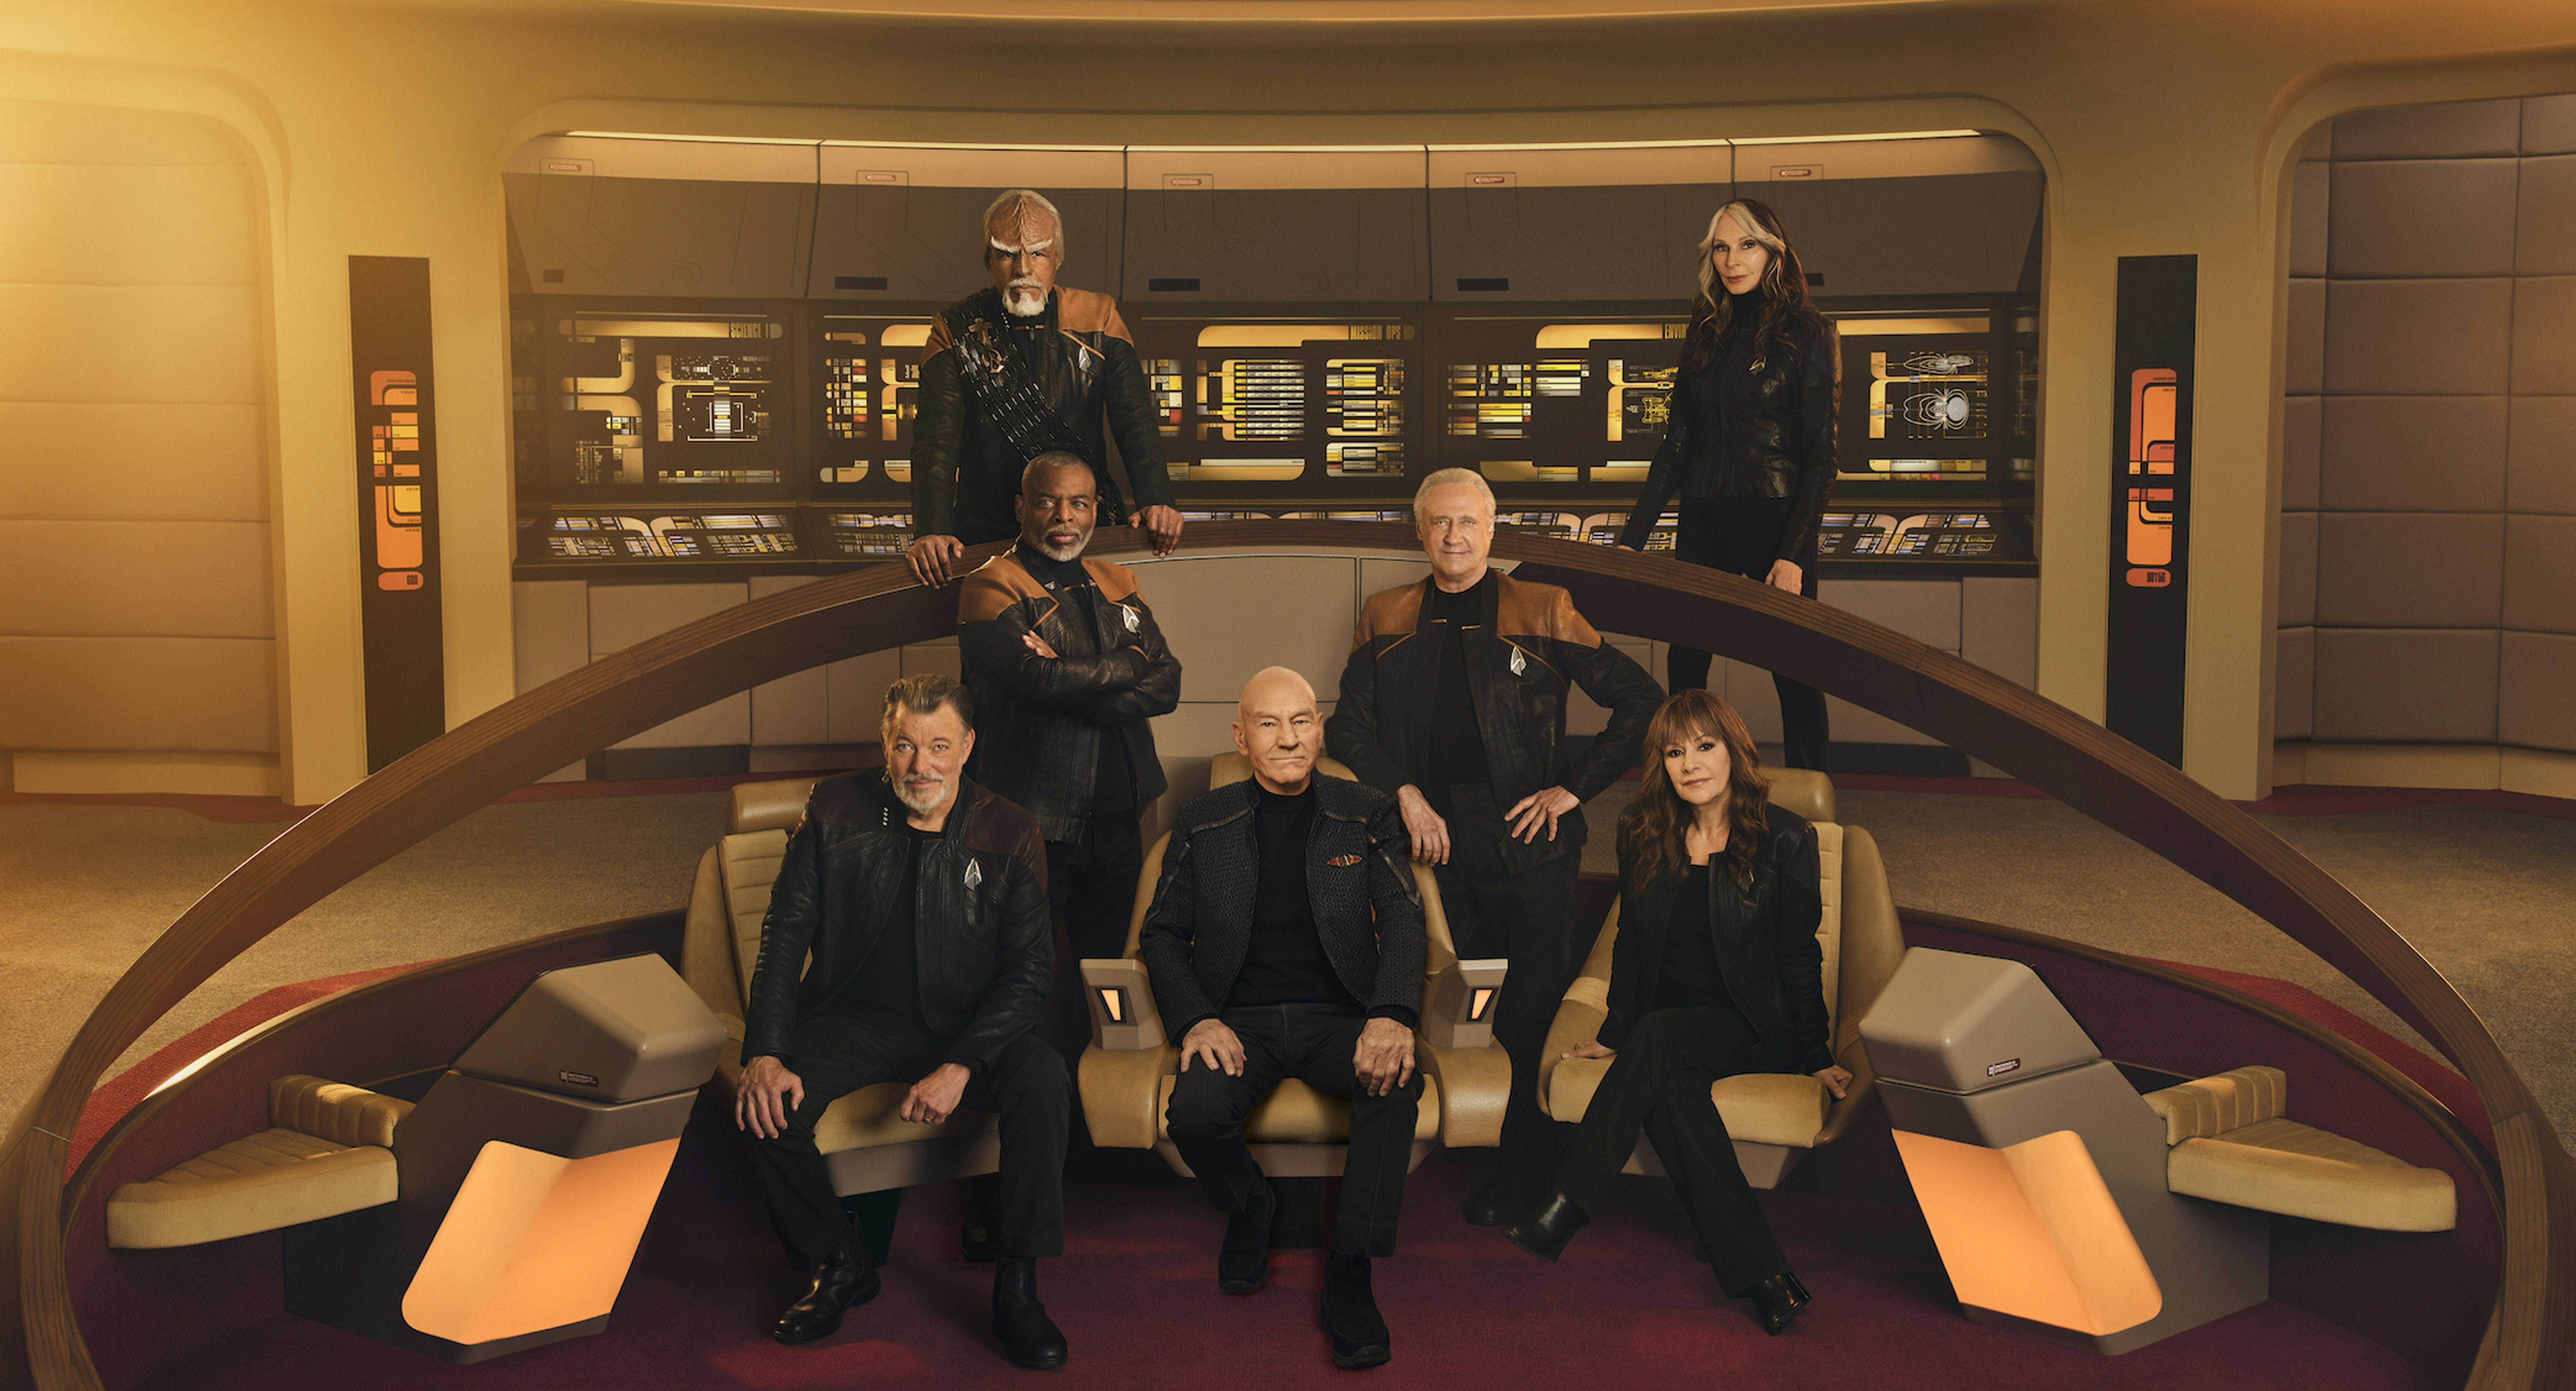 Star Trek: Picard cast portraits on the Enterprise-D